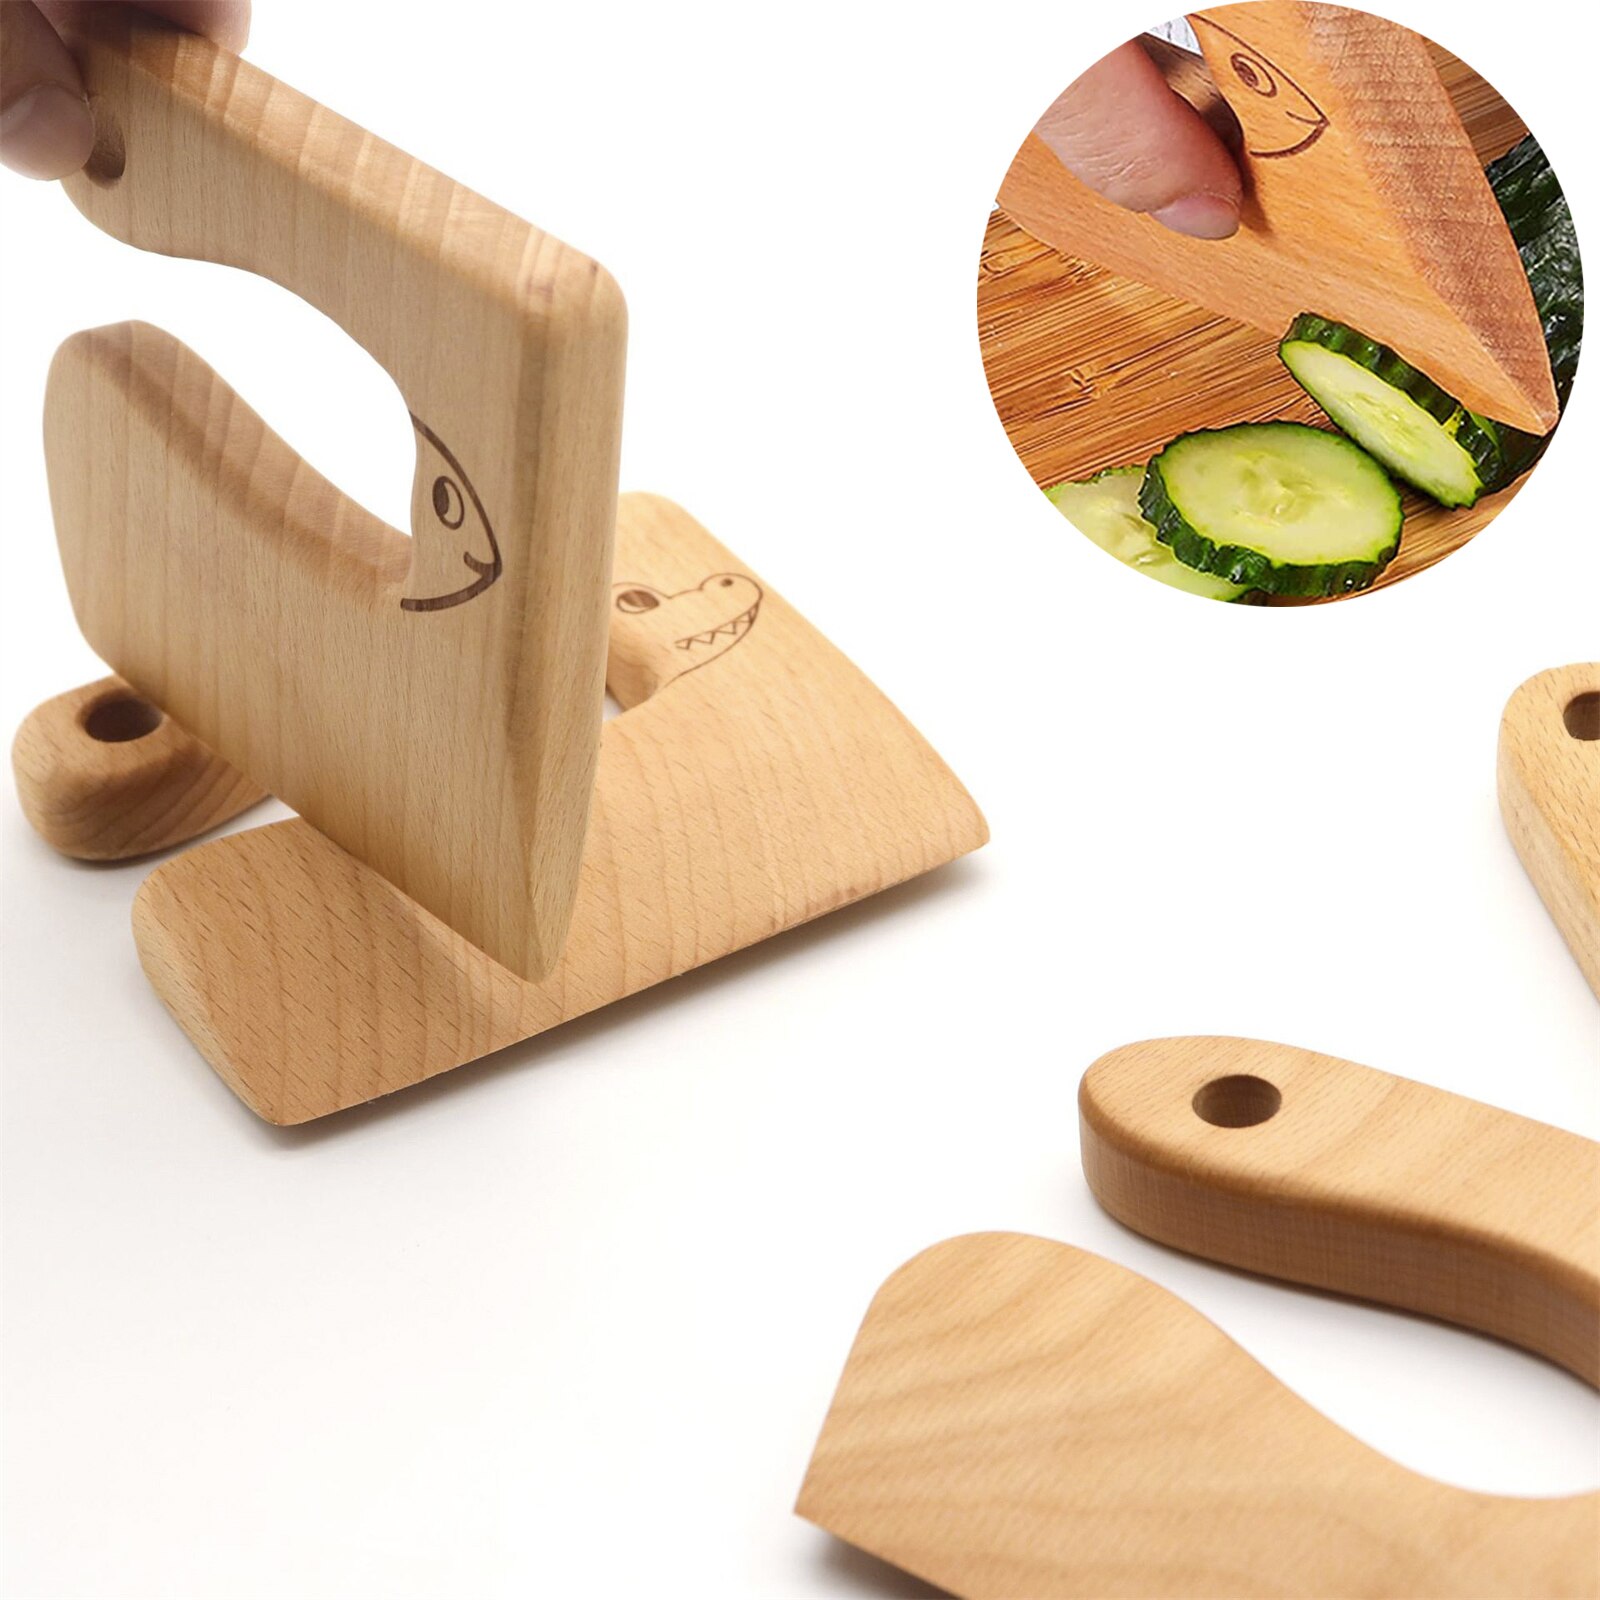 Houten Kids Cutter Leuke Vorm Keuken Tool Voor Snijden Groenten Koken Tools Voor Kinderen Veilig Keuken Snijden Speelgoed Diy Gereedschap